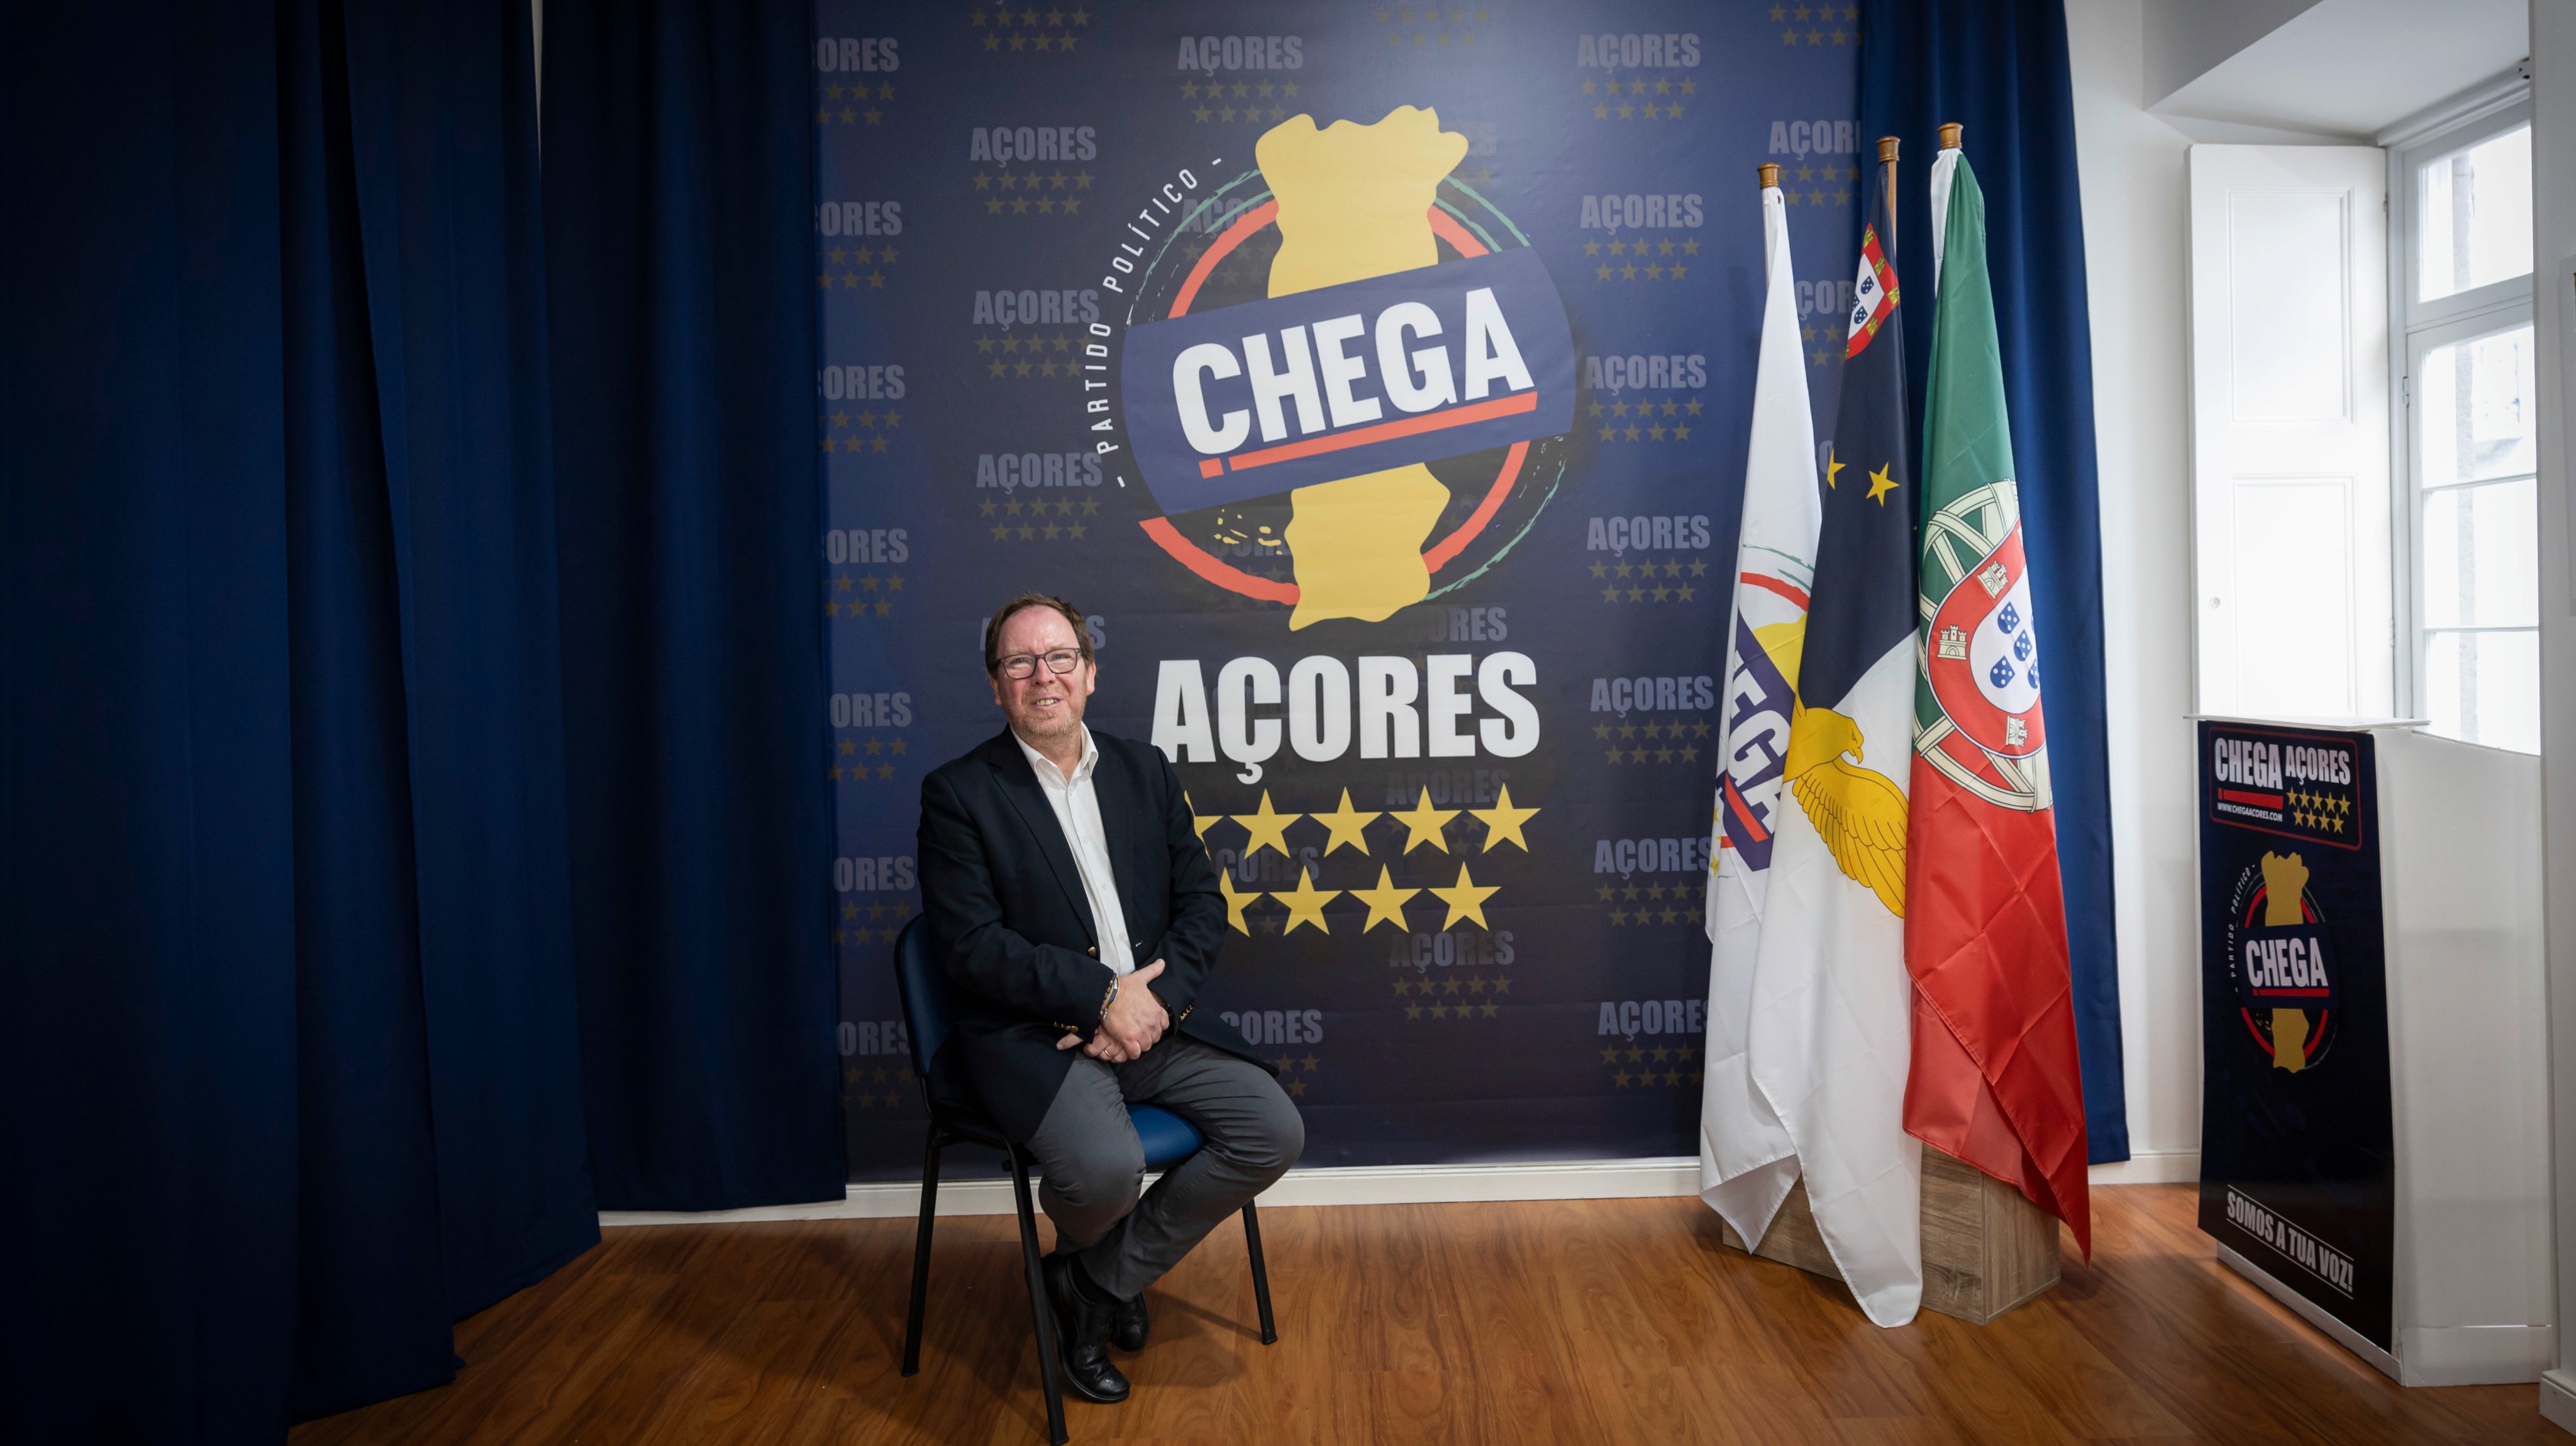 O parlamento dos Açores é composto por 57 deputados, dos quais cinco fazem parte da bancada do Chega